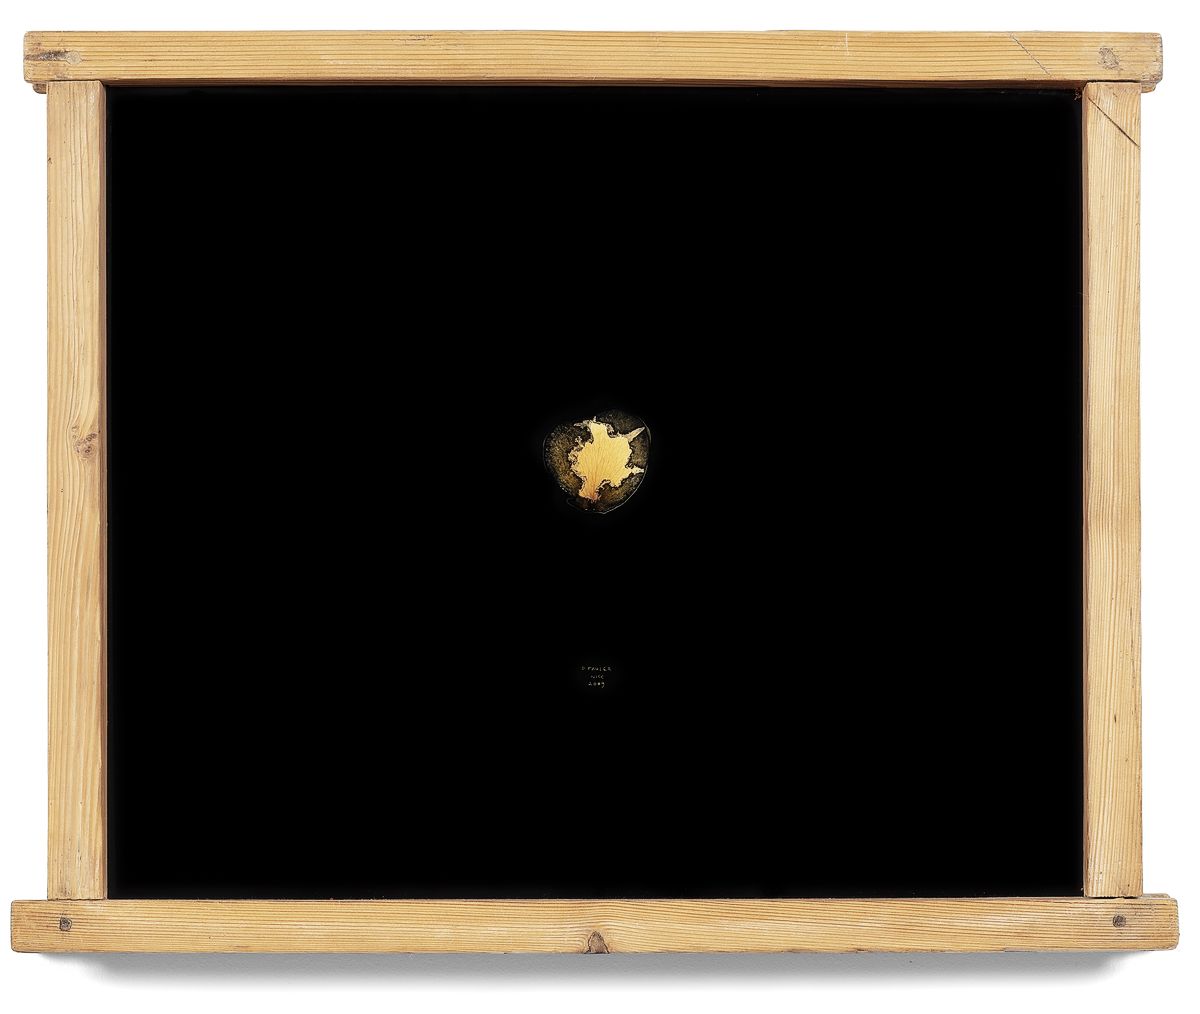 Филипп Фавье. ST (Лепестки роз(Pétales de roses)), 2009. Краска, роспись на стекле, лепестки цветов. 45 x 56 x 5 см. Коллекция Флоранс и Даниэля Герлен, Париж